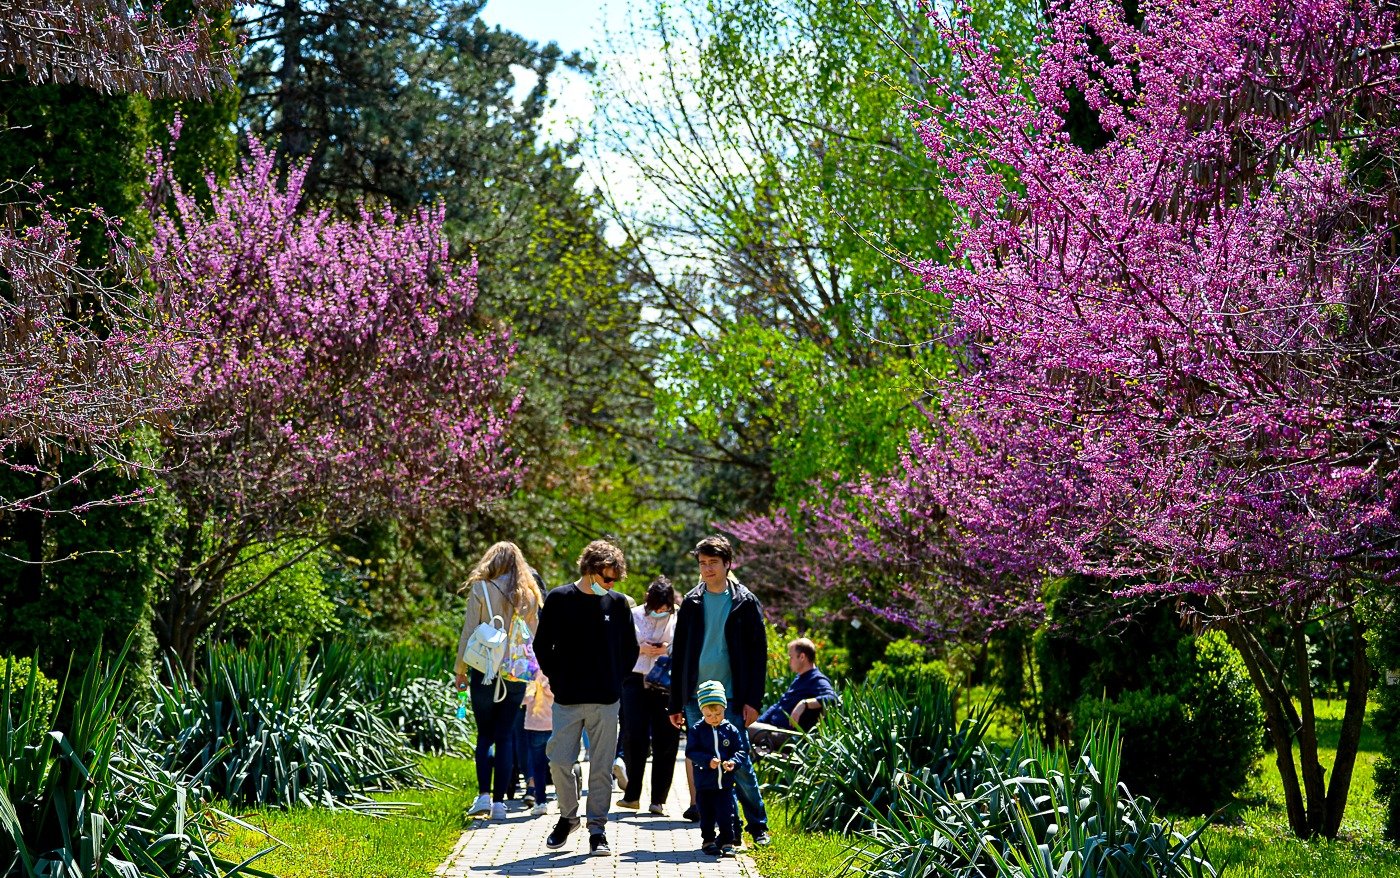  IMAGINI: Câtă bucurie pot aduce florile de primăvară din Grădina Botanică!